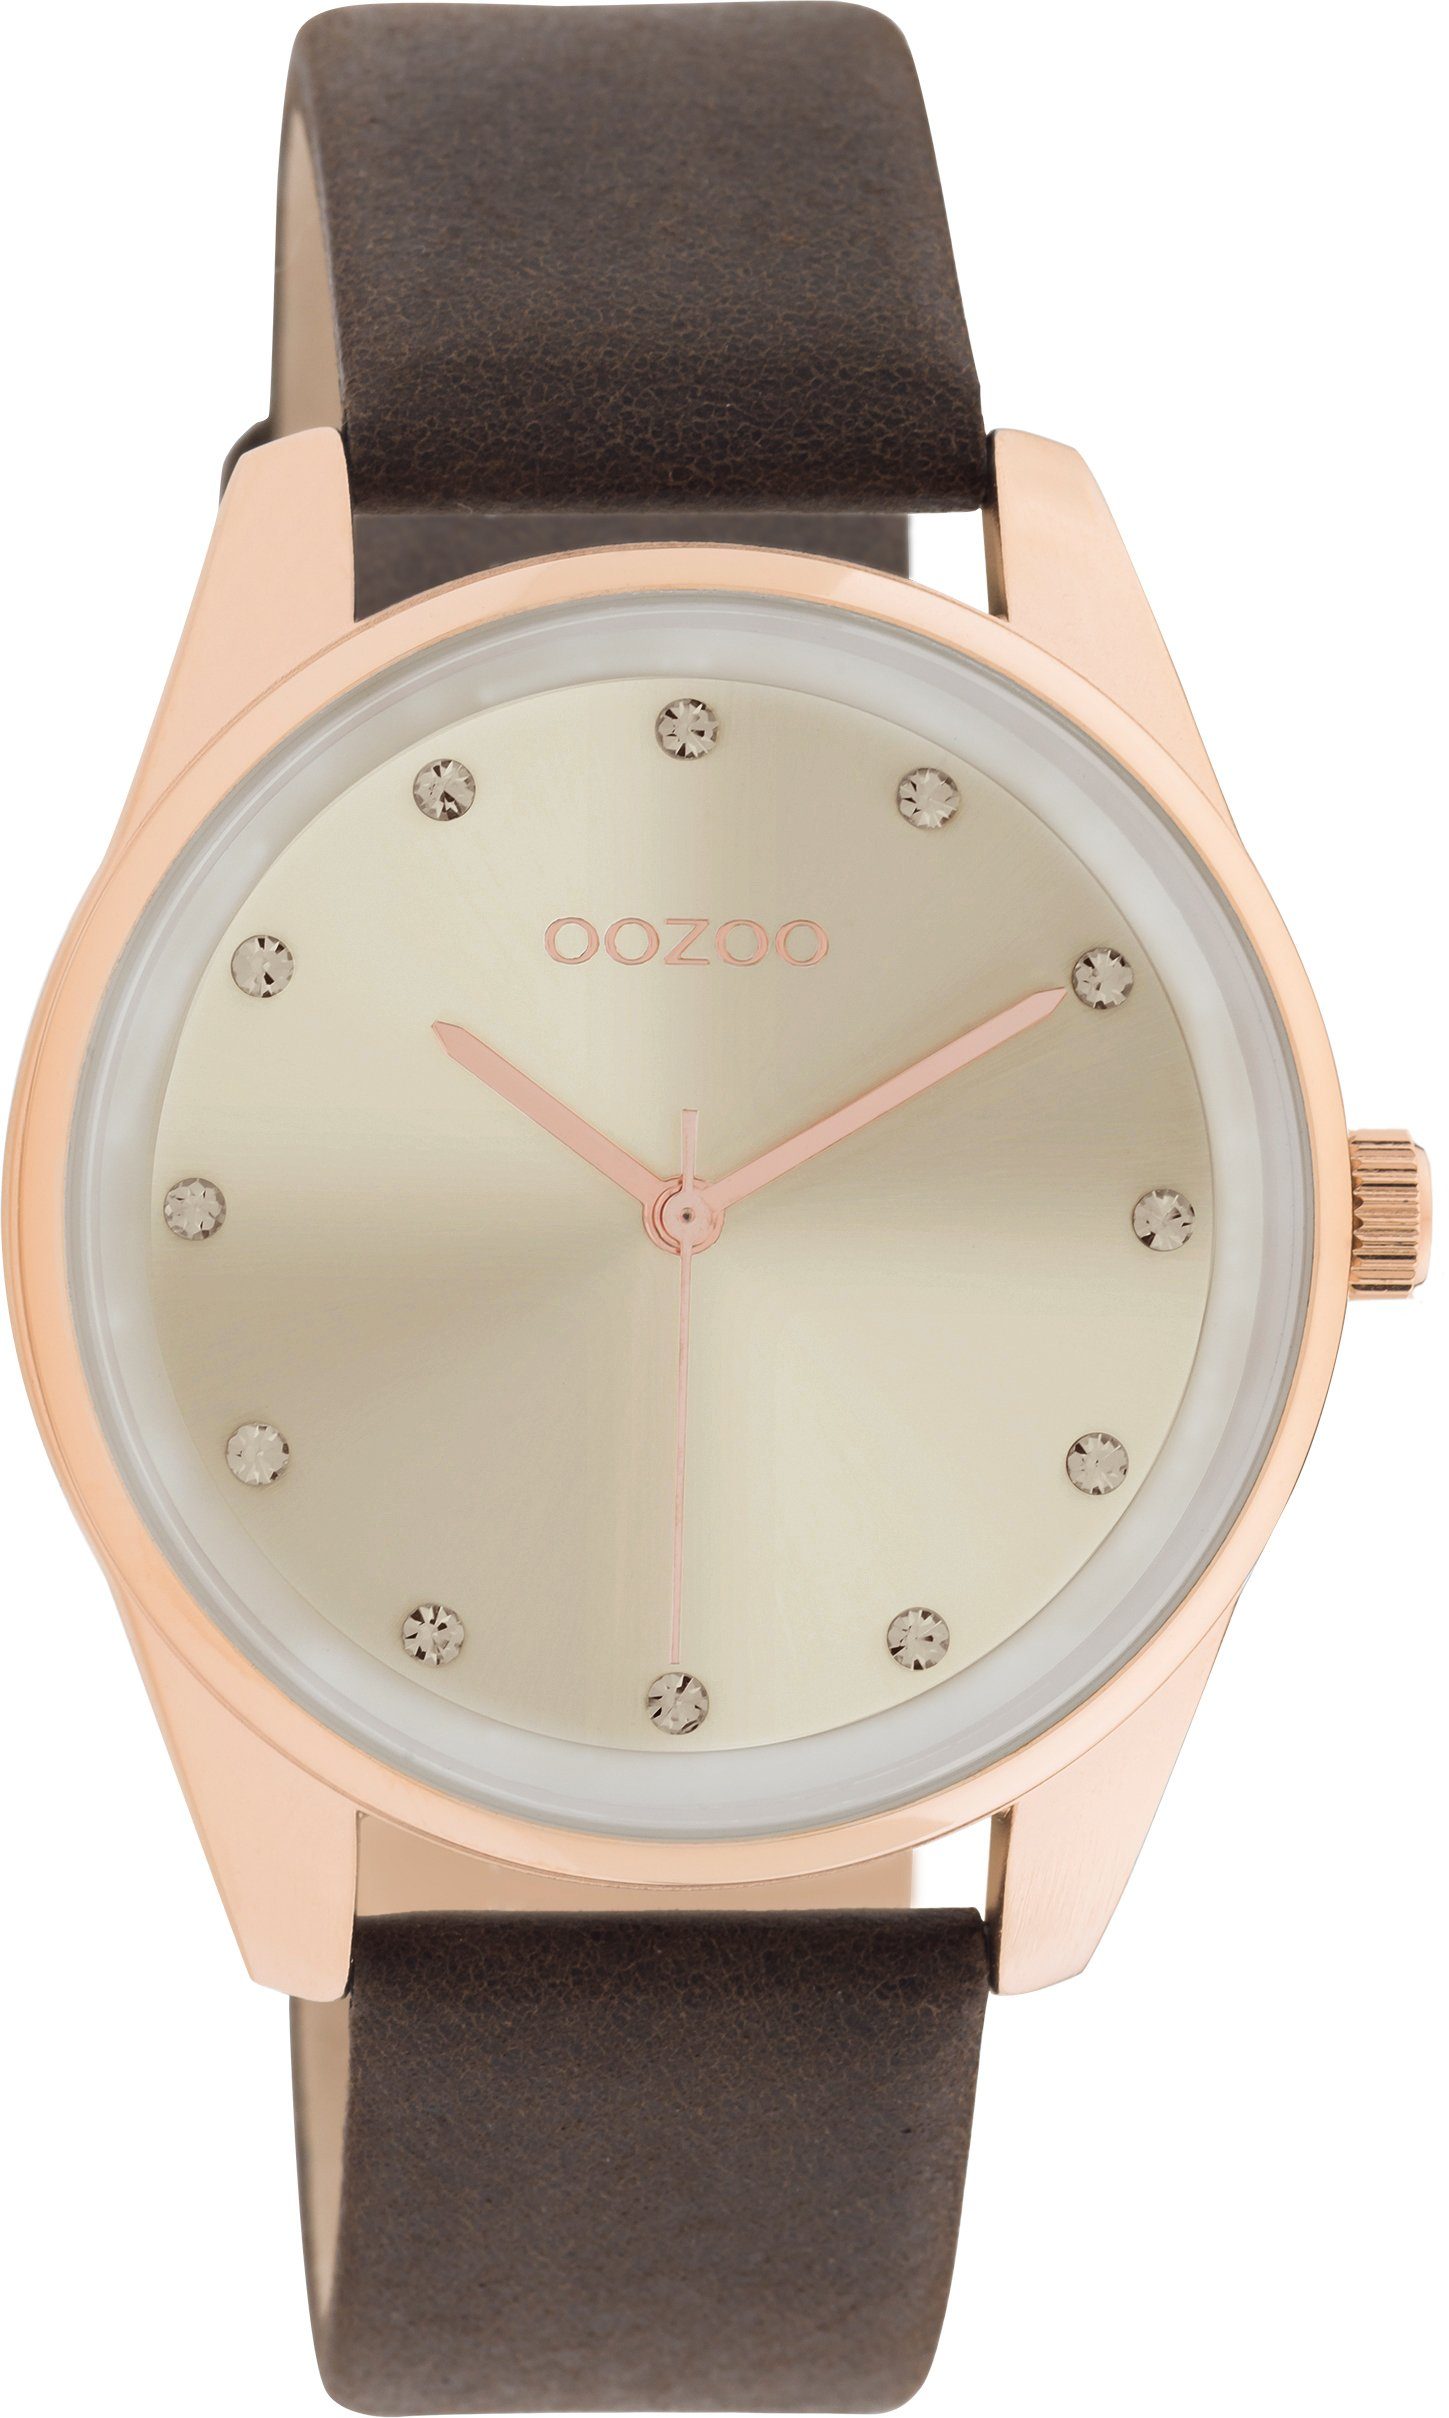 OOZOO Quarzuhr C11048, Armbanduhr, Damenuhr